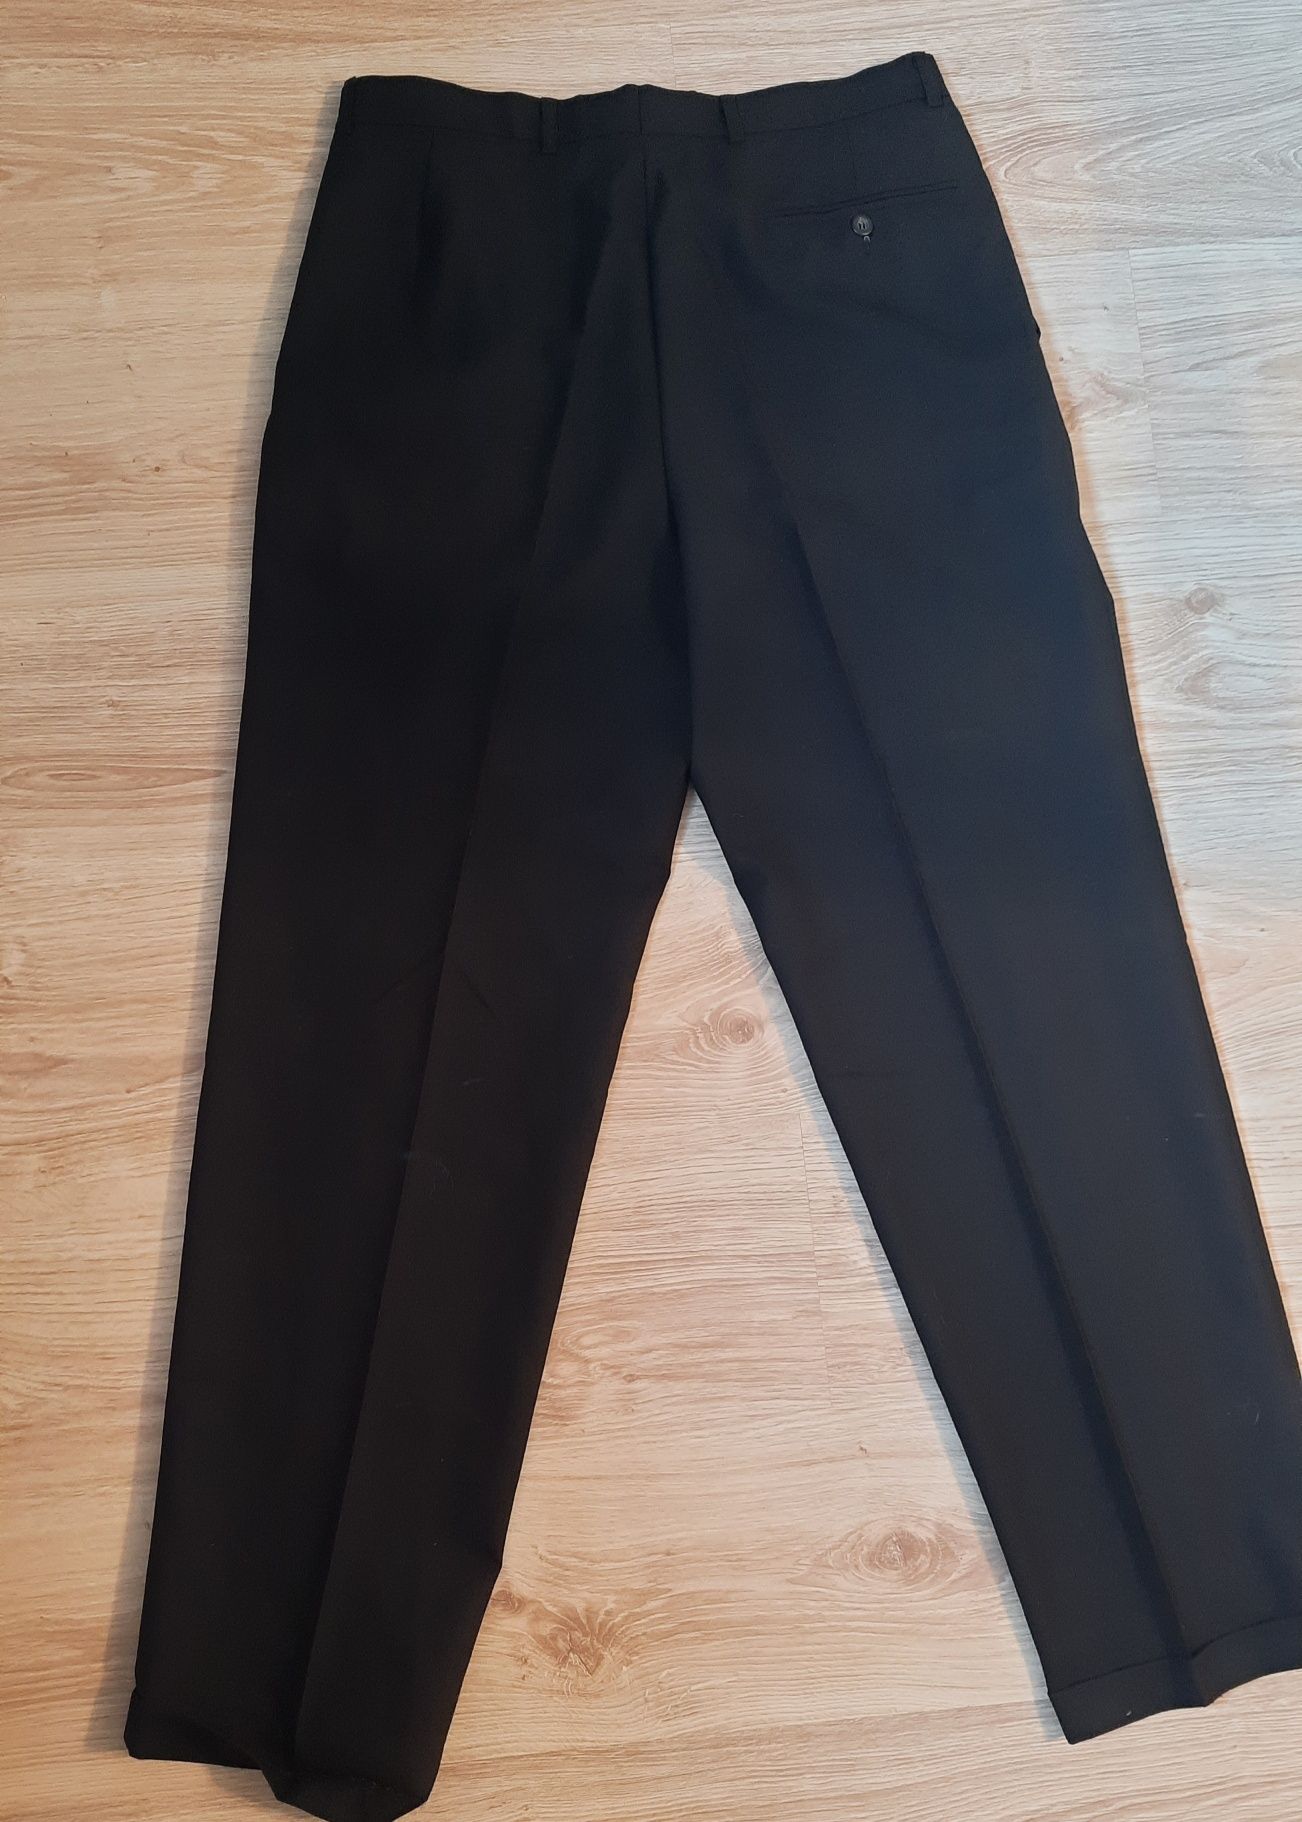 Cieńkie spodnie garniturowe pas 43cm, 111,5 cm długość